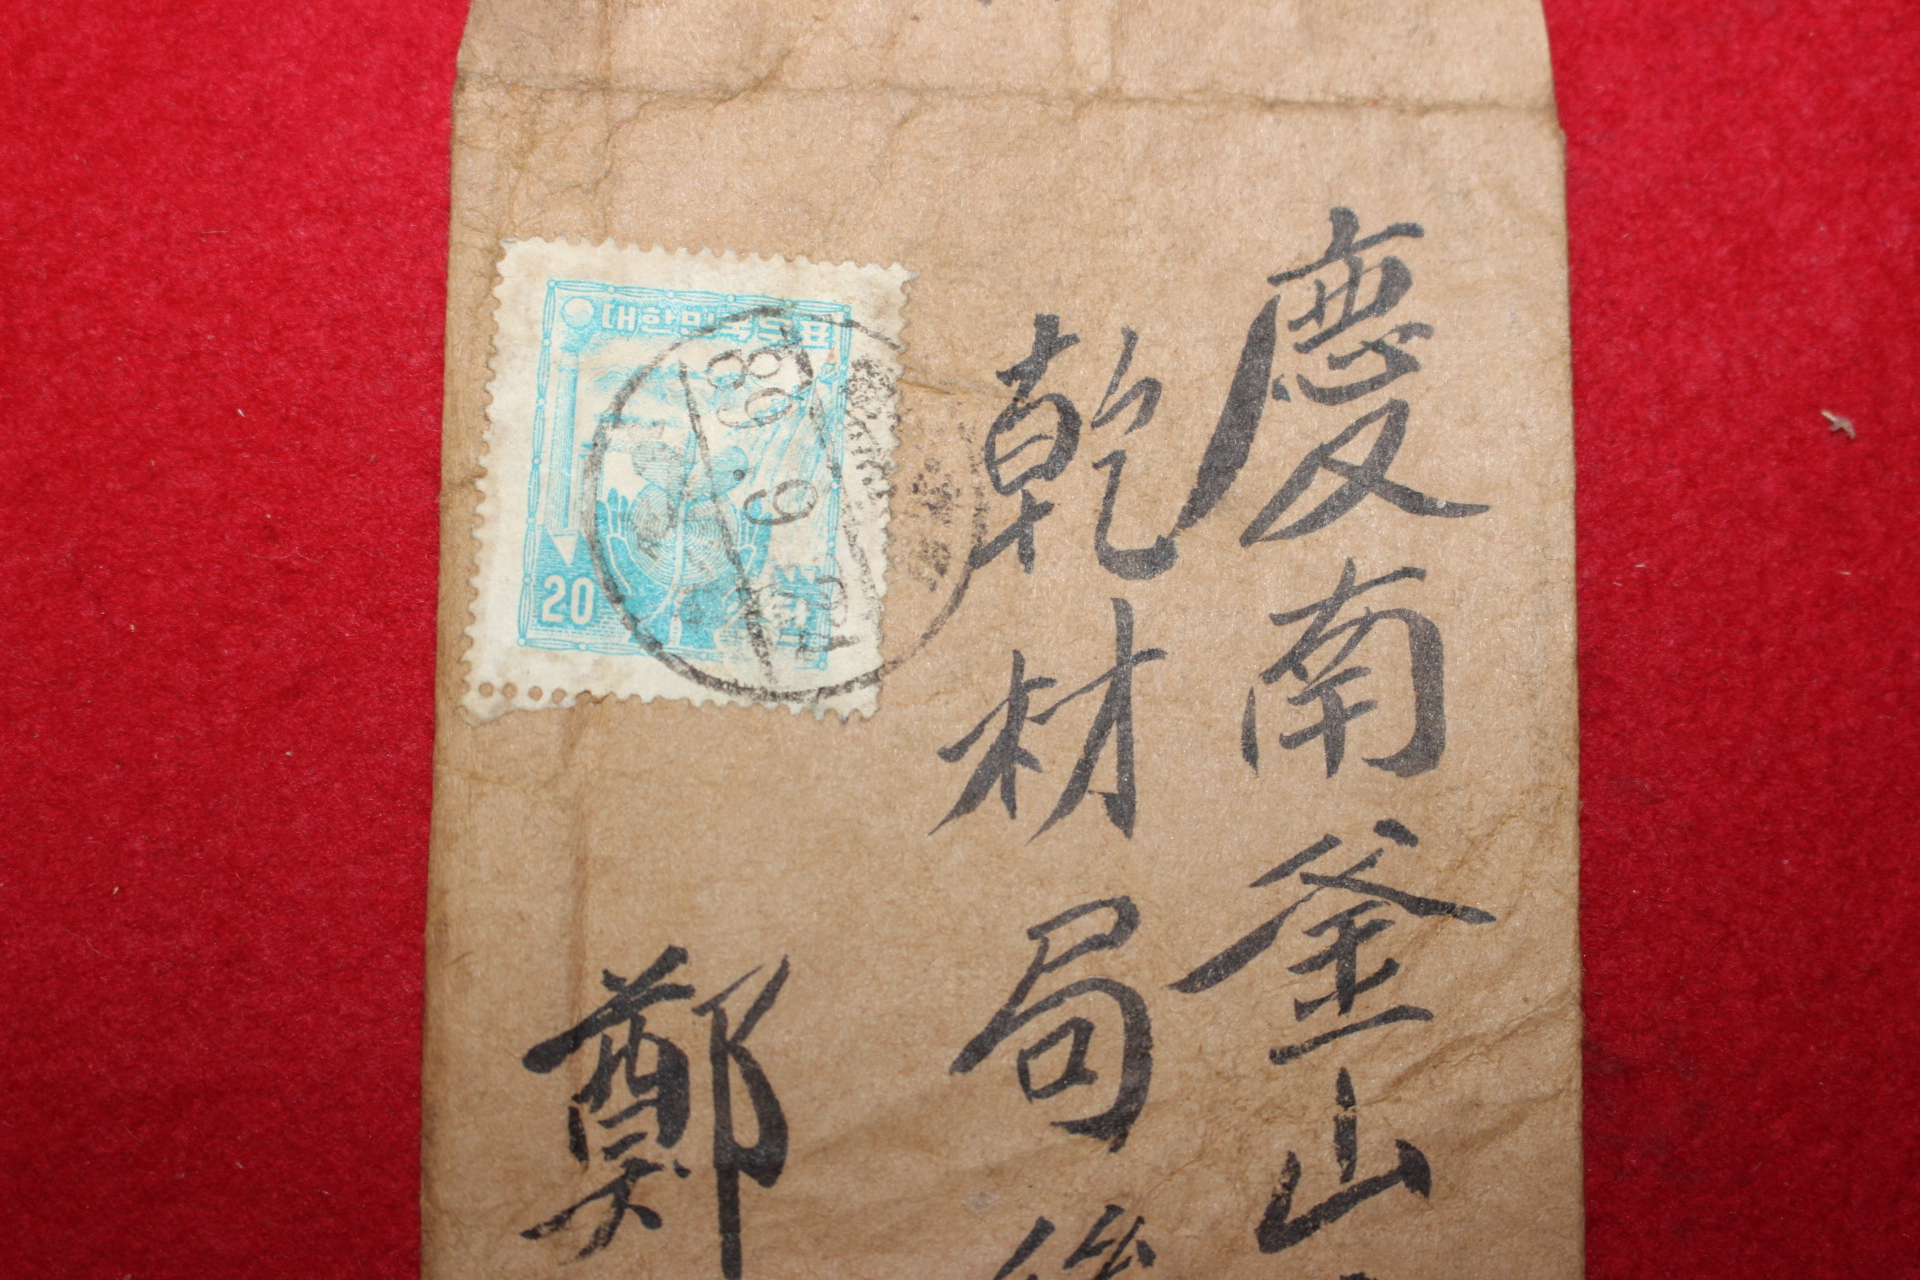 29-1956년 우편사용실체